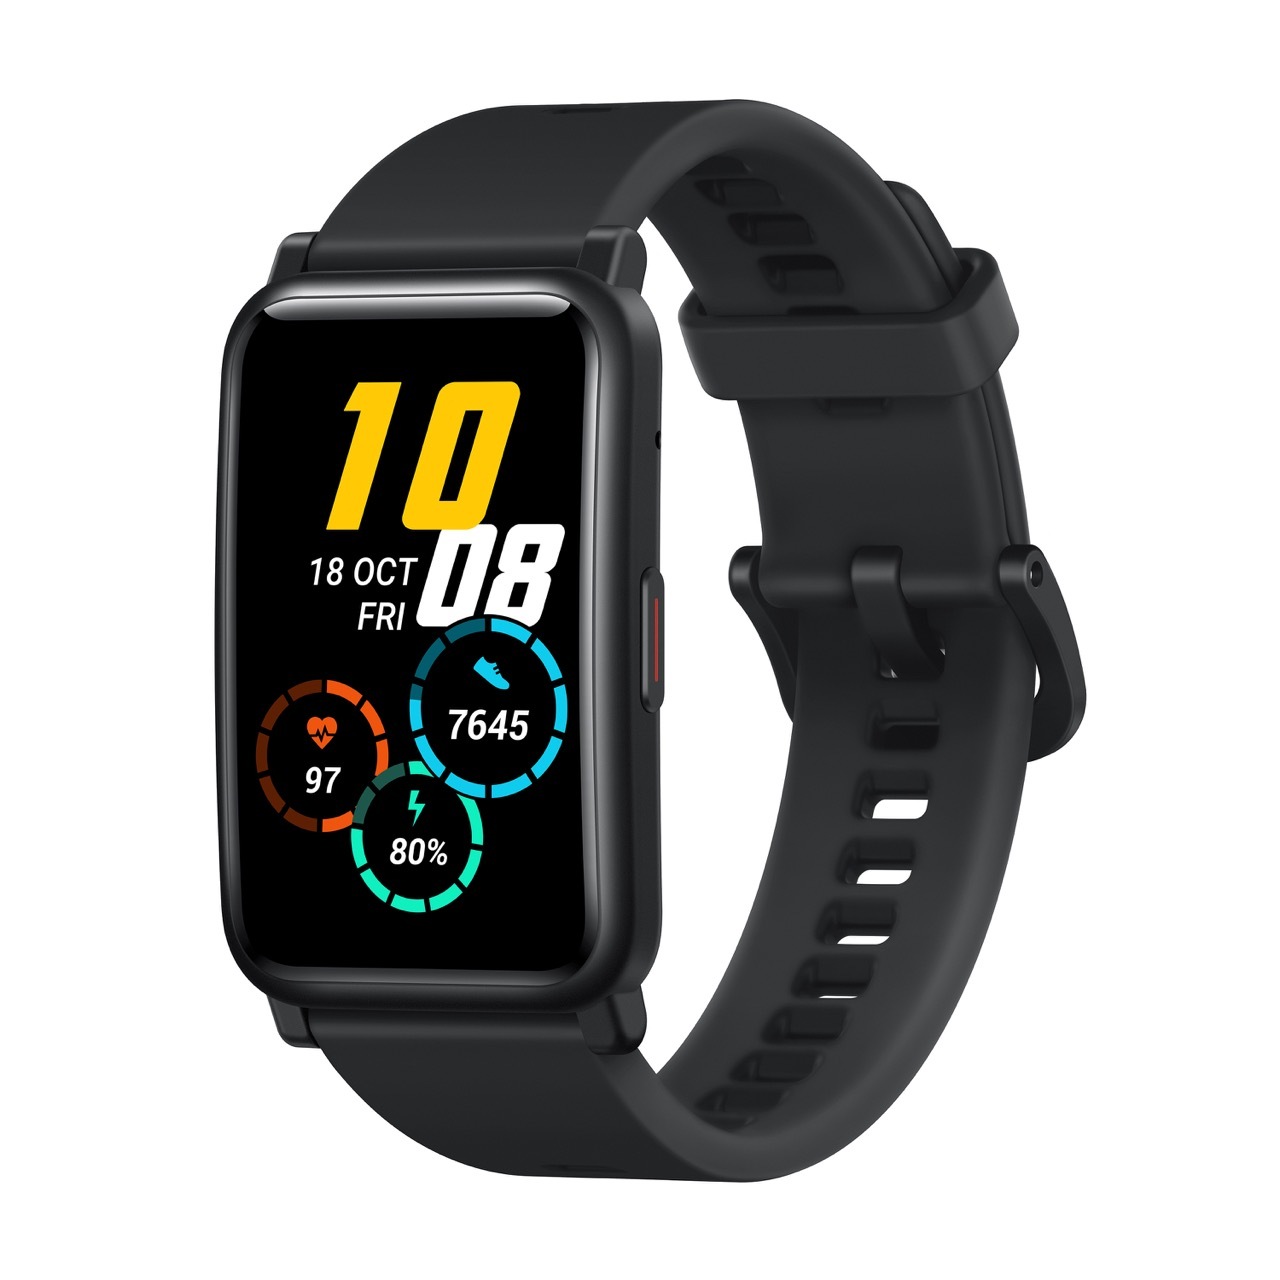 Nuevo Honor Watch ES: gran aspirante a reloj deportivo de menos de 100 euros